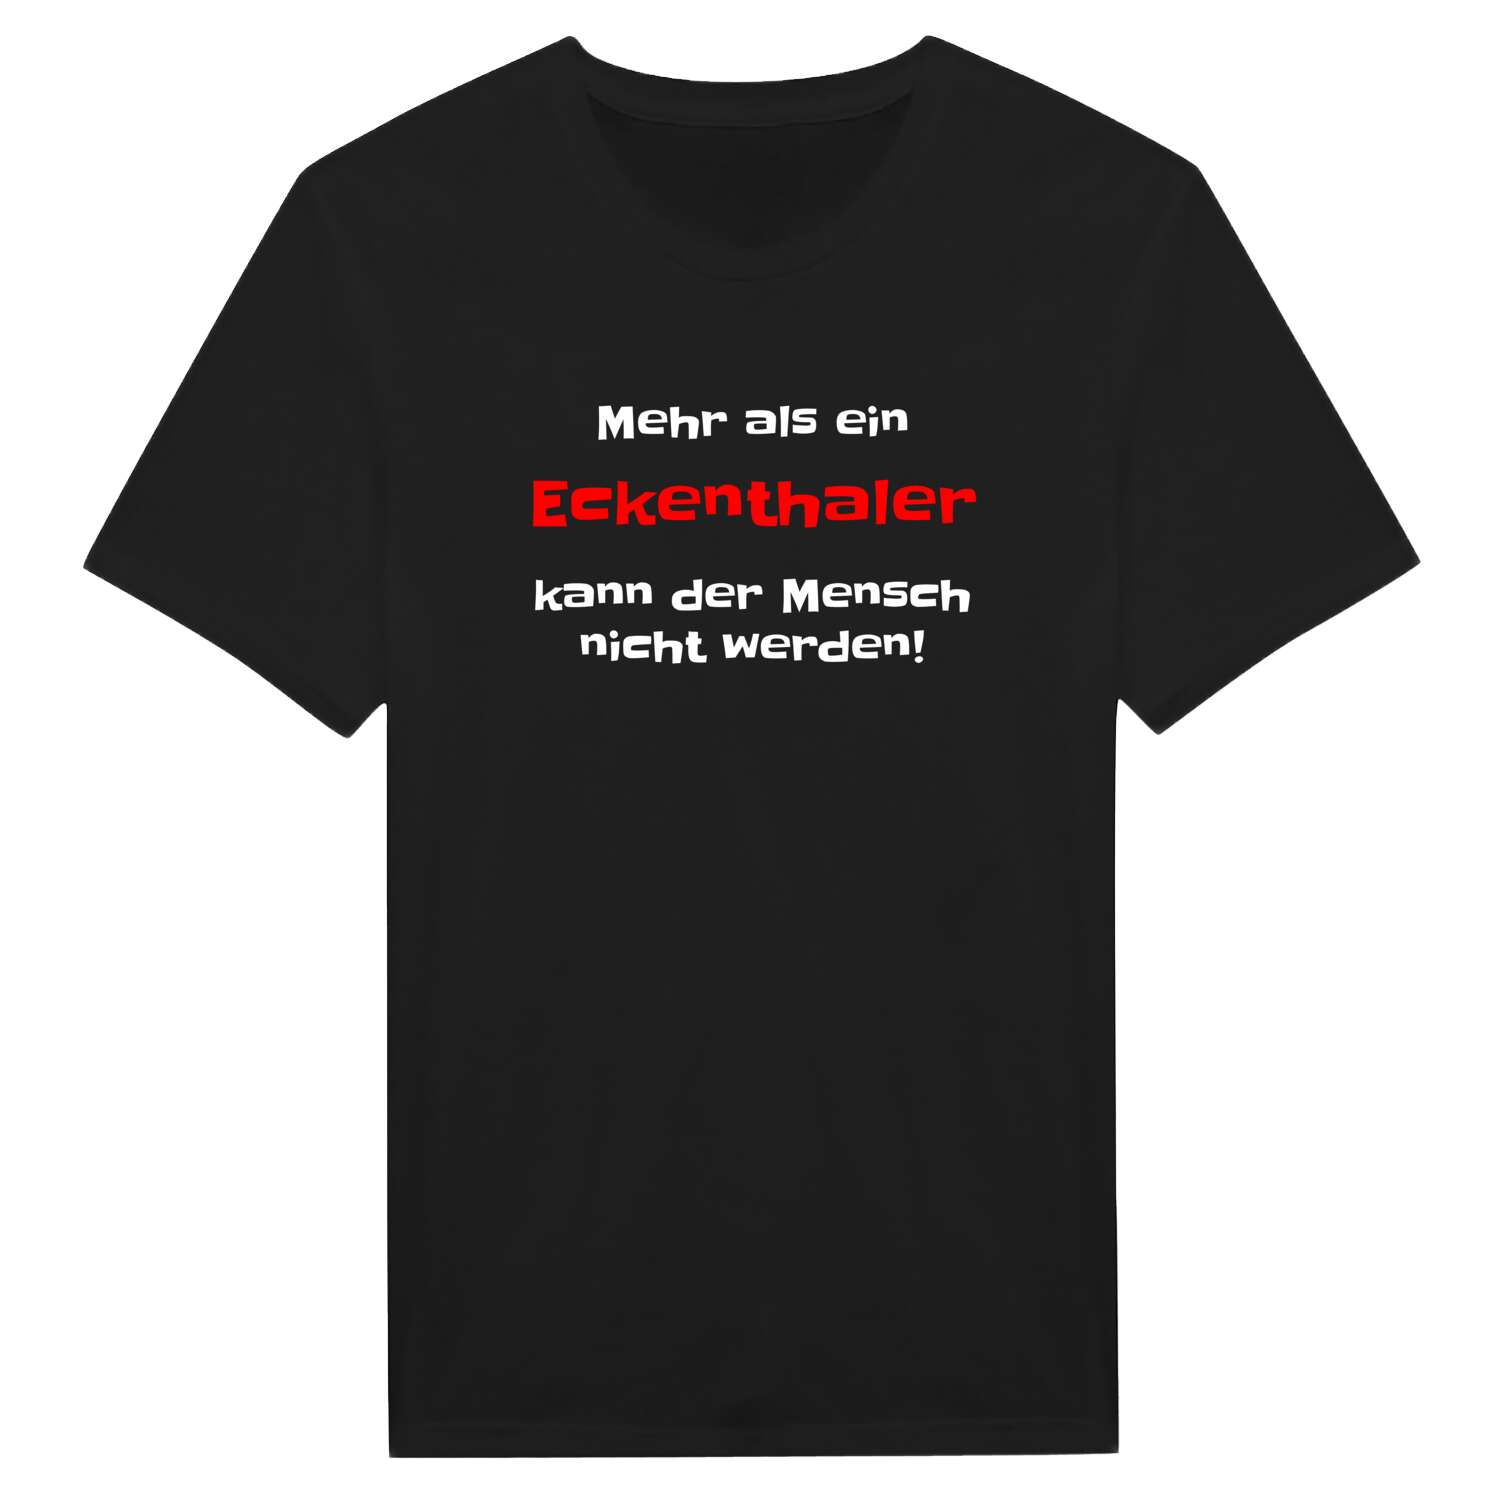 Eckenthal T-Shirt »Mehr als ein«